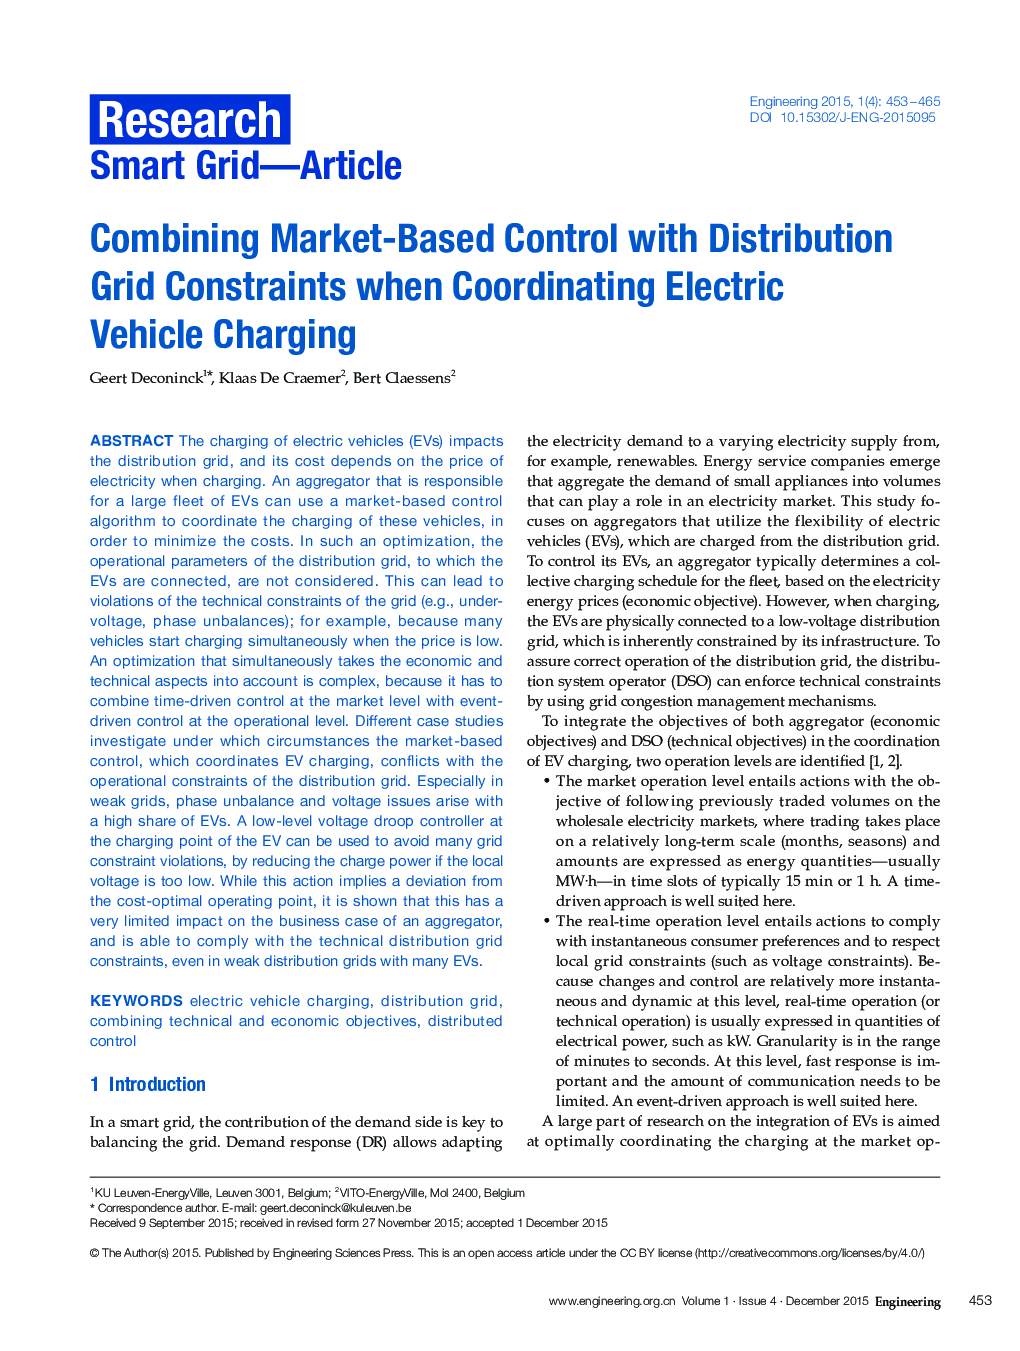 ترکیب کنترل مبتنی بر بازار با محدودیت های شبکه توزیع زمانی که هماهنگ سازی شارژ خودرو الکتریکی 